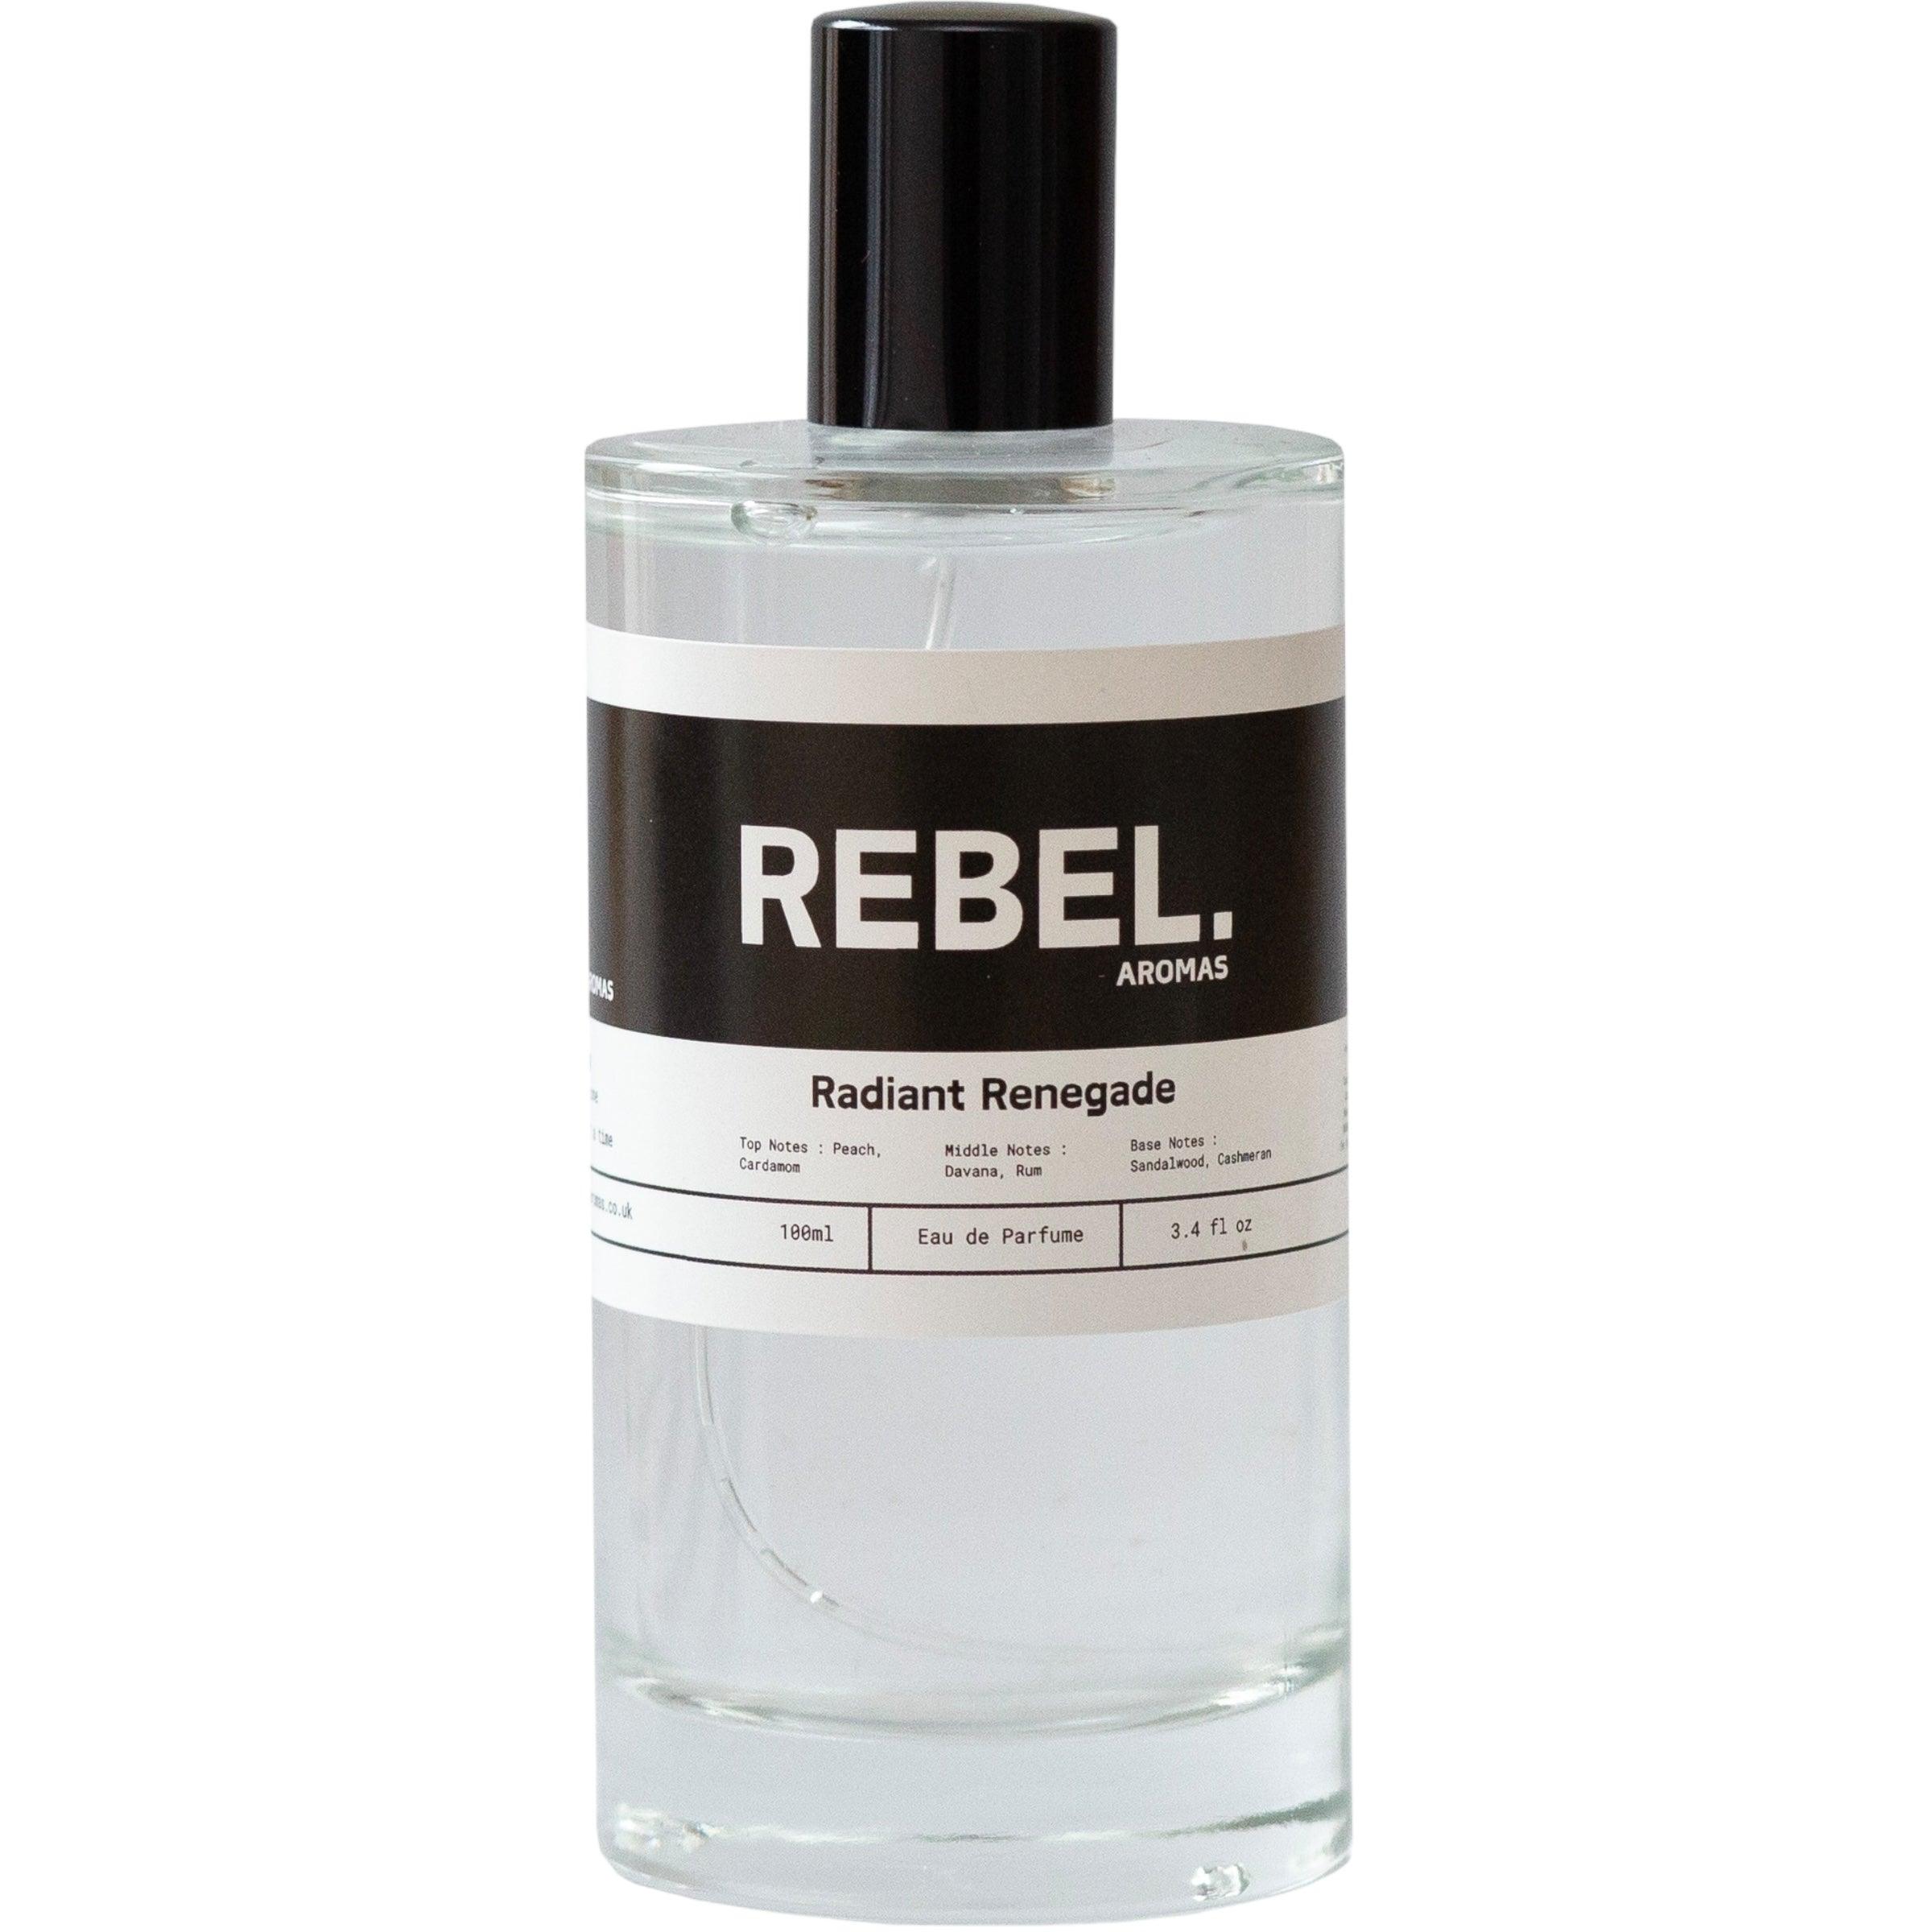 Radiant Renegade - Rebel Aromas